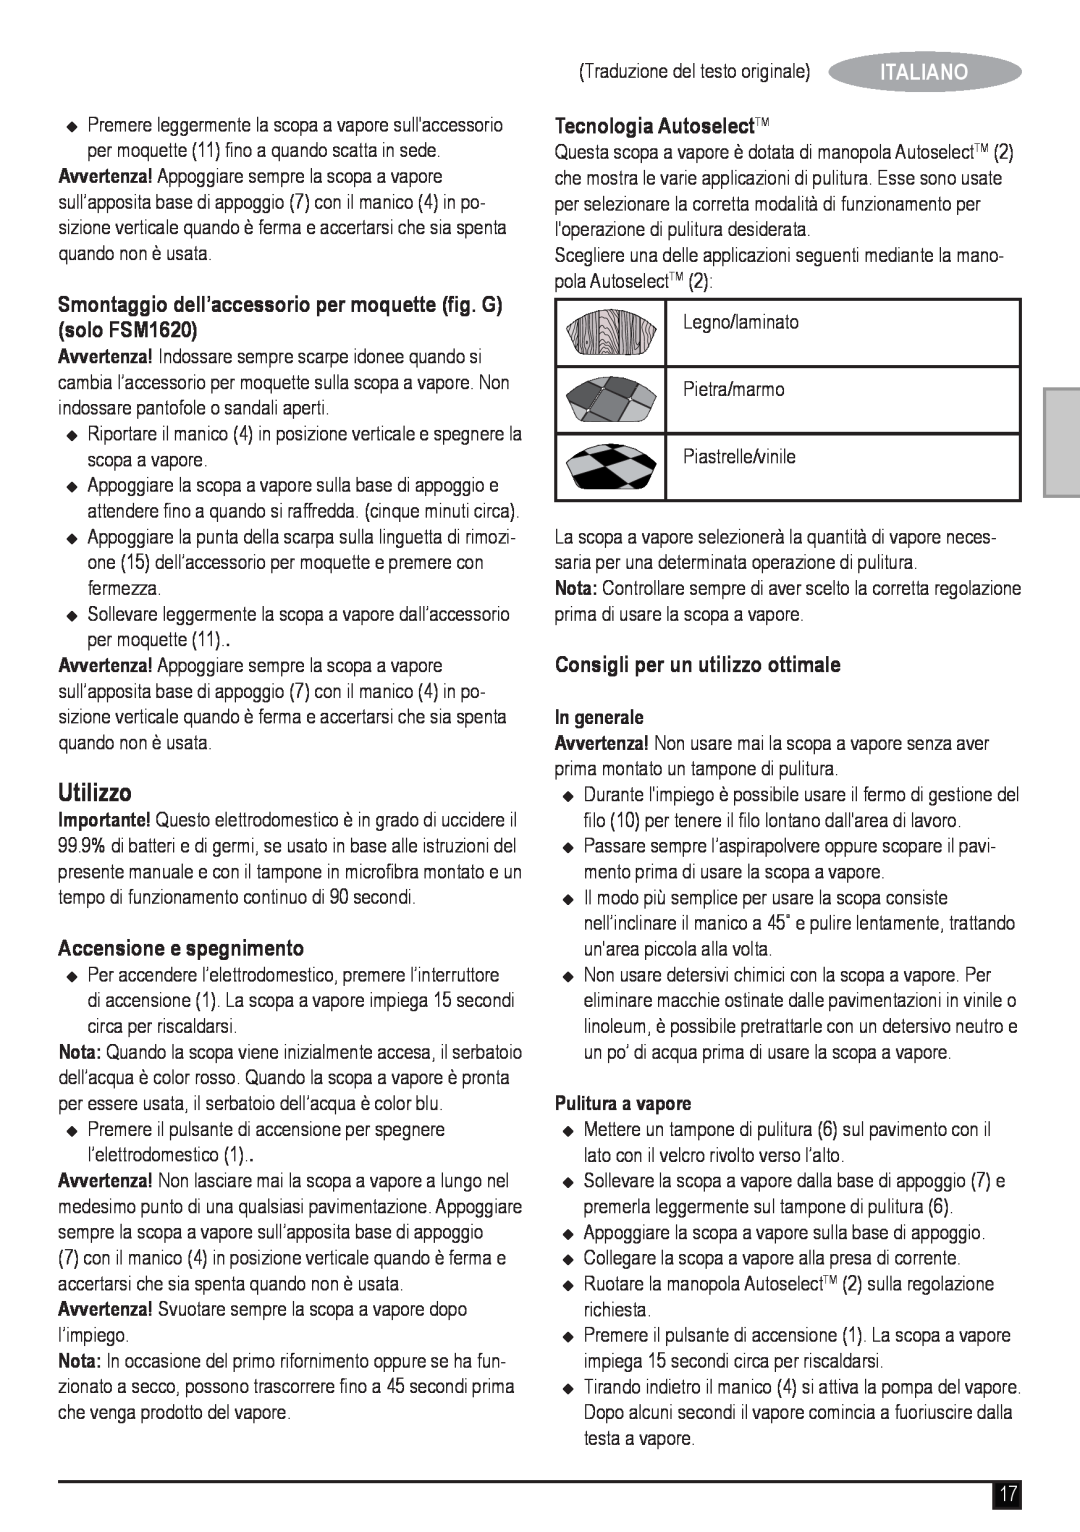 Black & Decker manual Utilizzo, Smontaggio dell’accessorio per moquette fig. G solo FSM1620, Accensione e spegnimento 